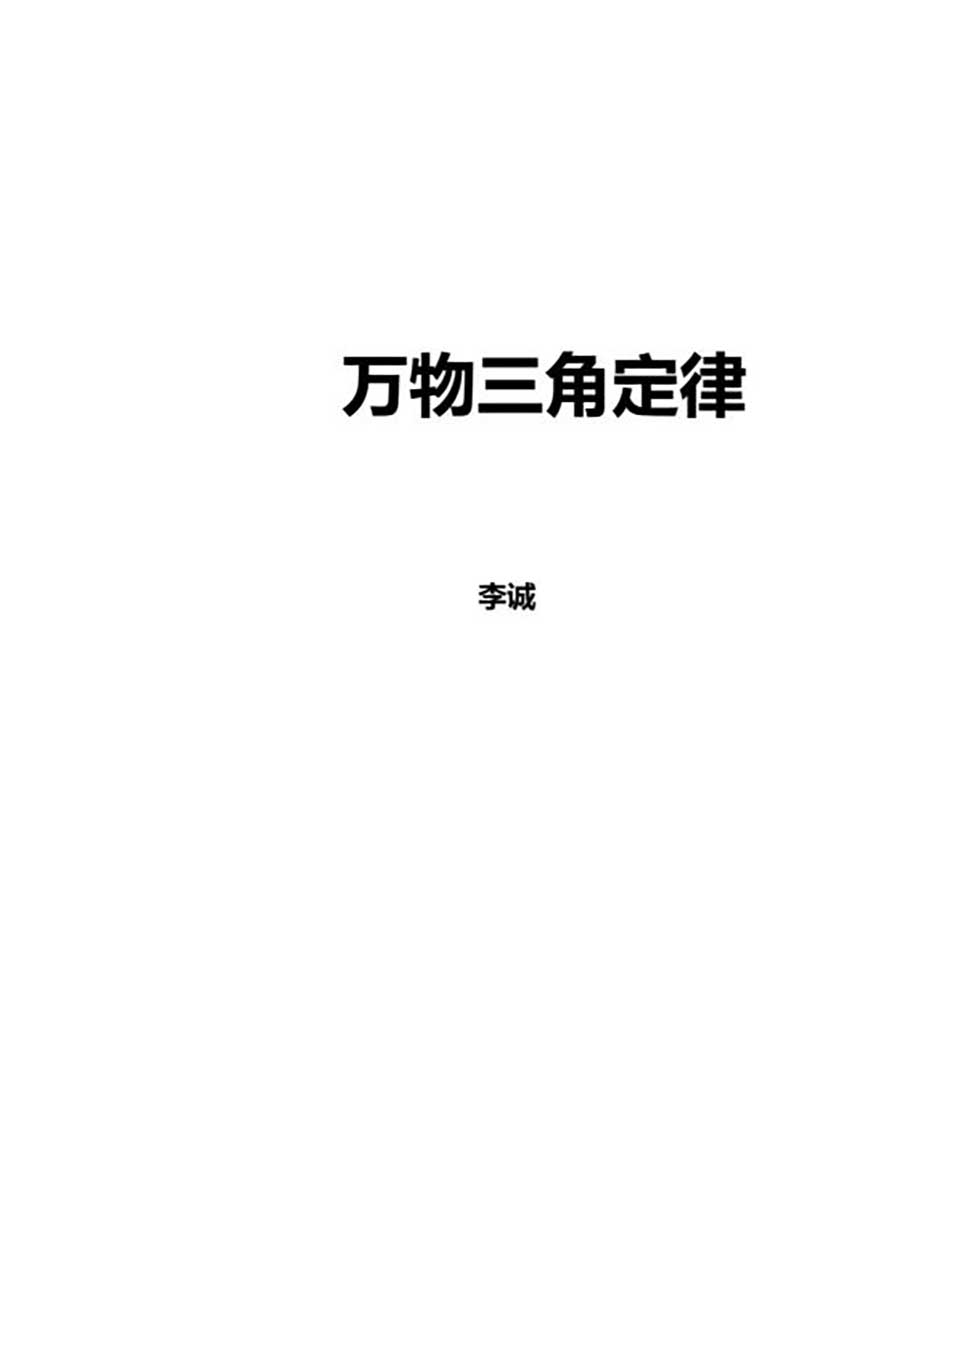 苏方行-万事三角定律面授班整理版30页.pdf